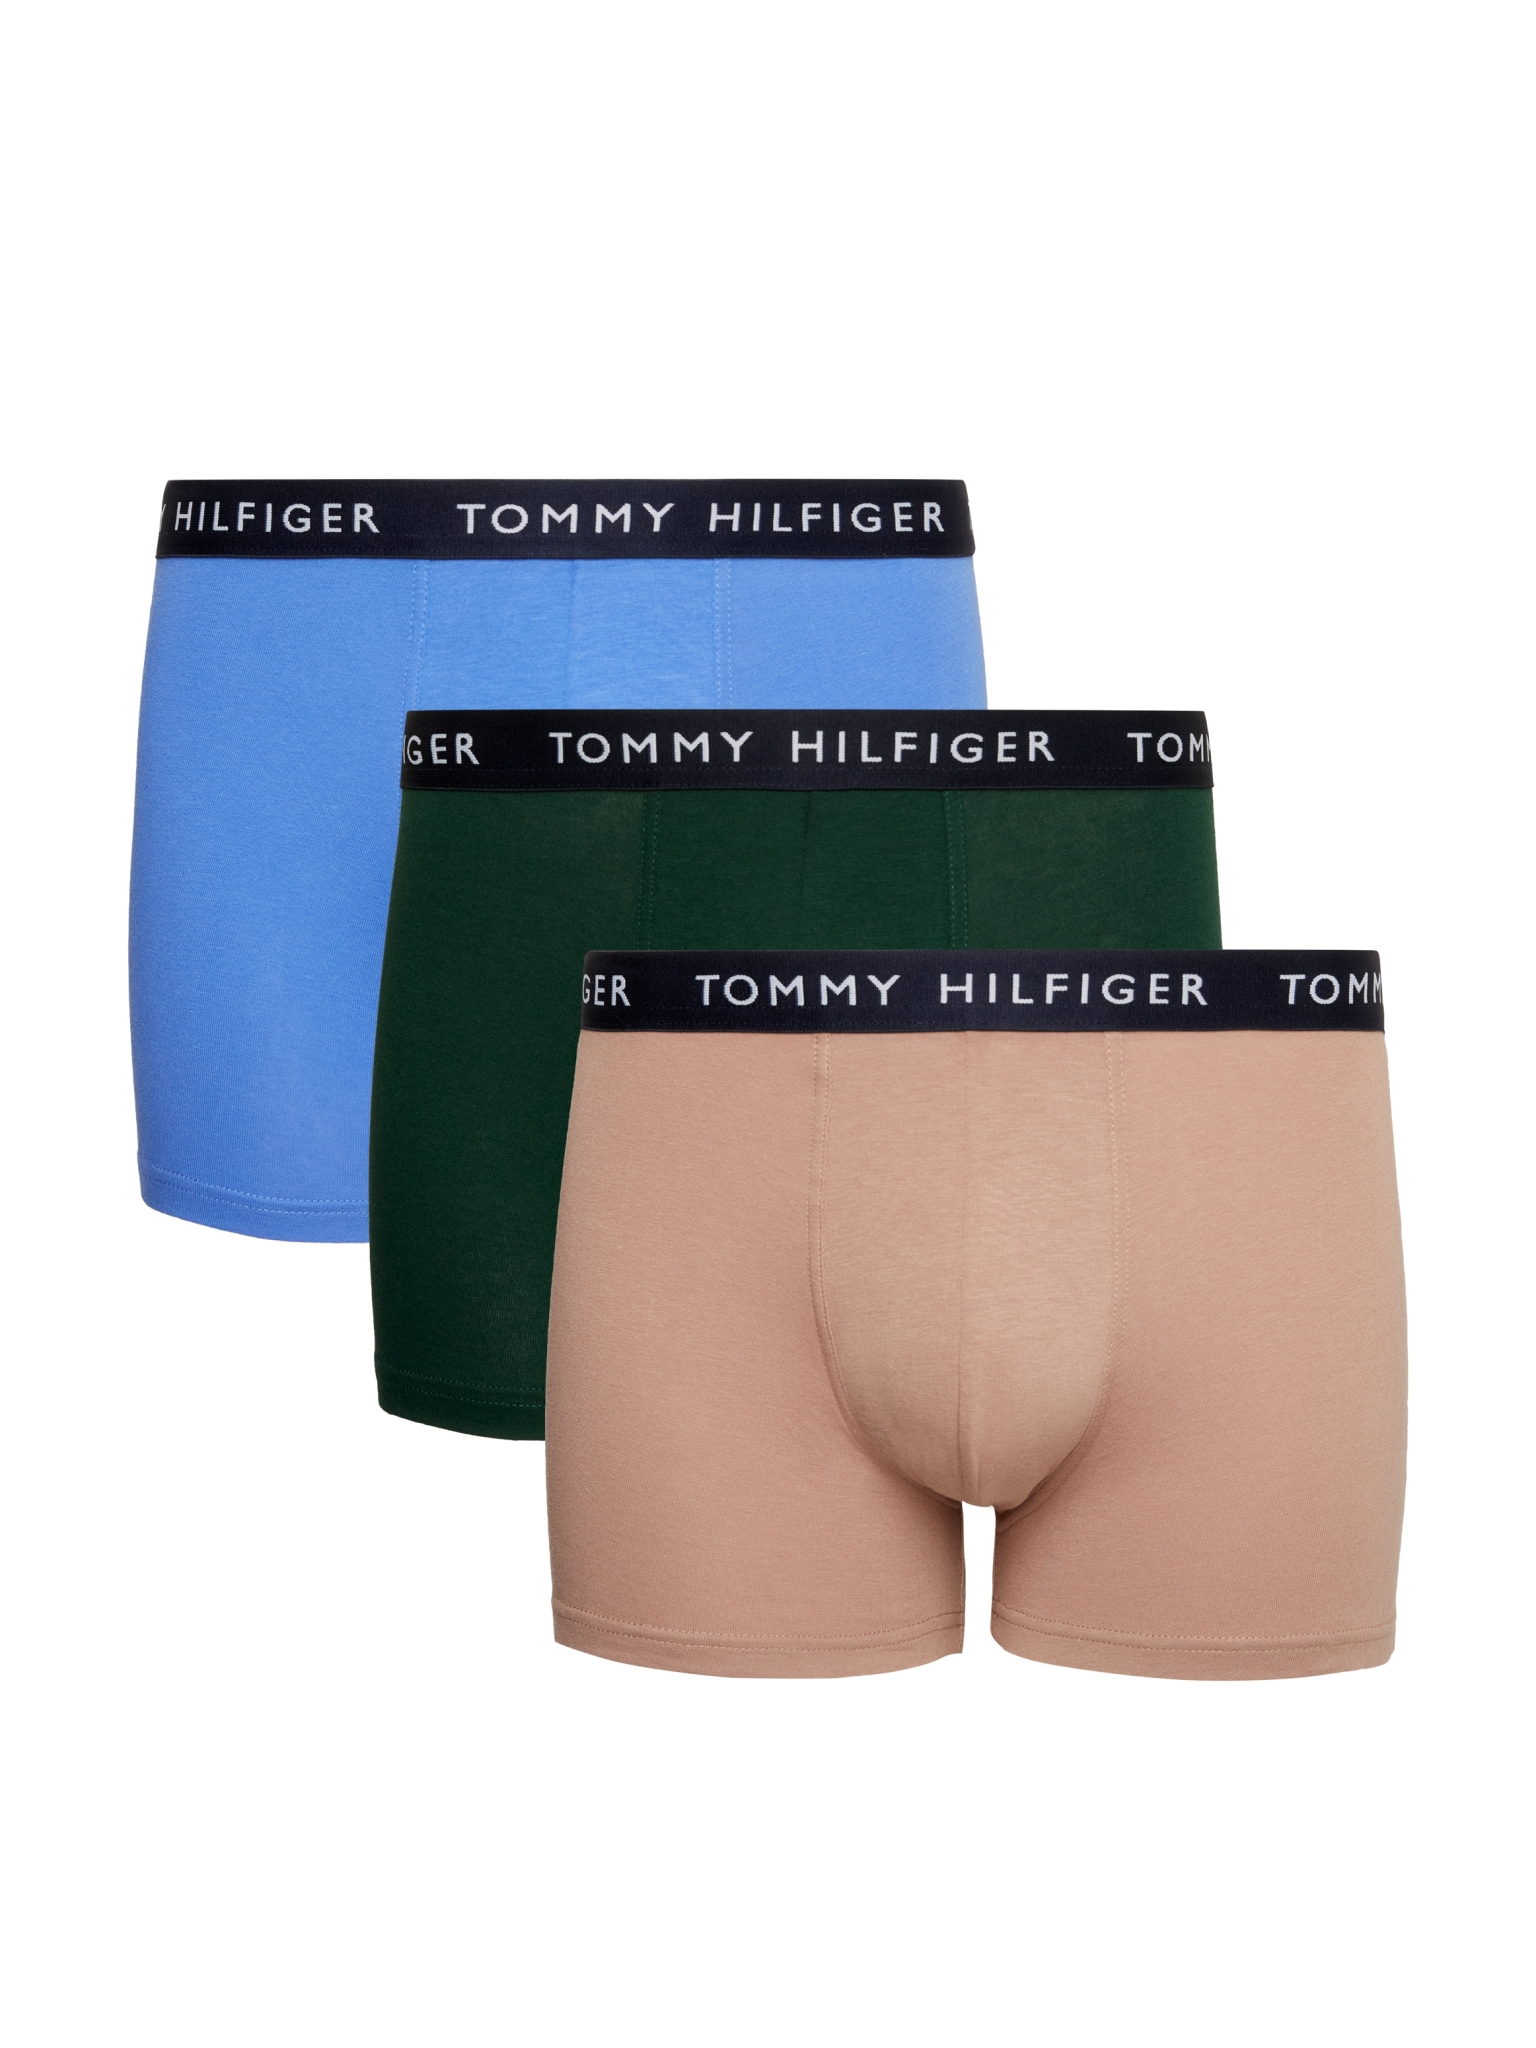 TOMMY HILFIGER 3er-Pack Unterhosen 10712429